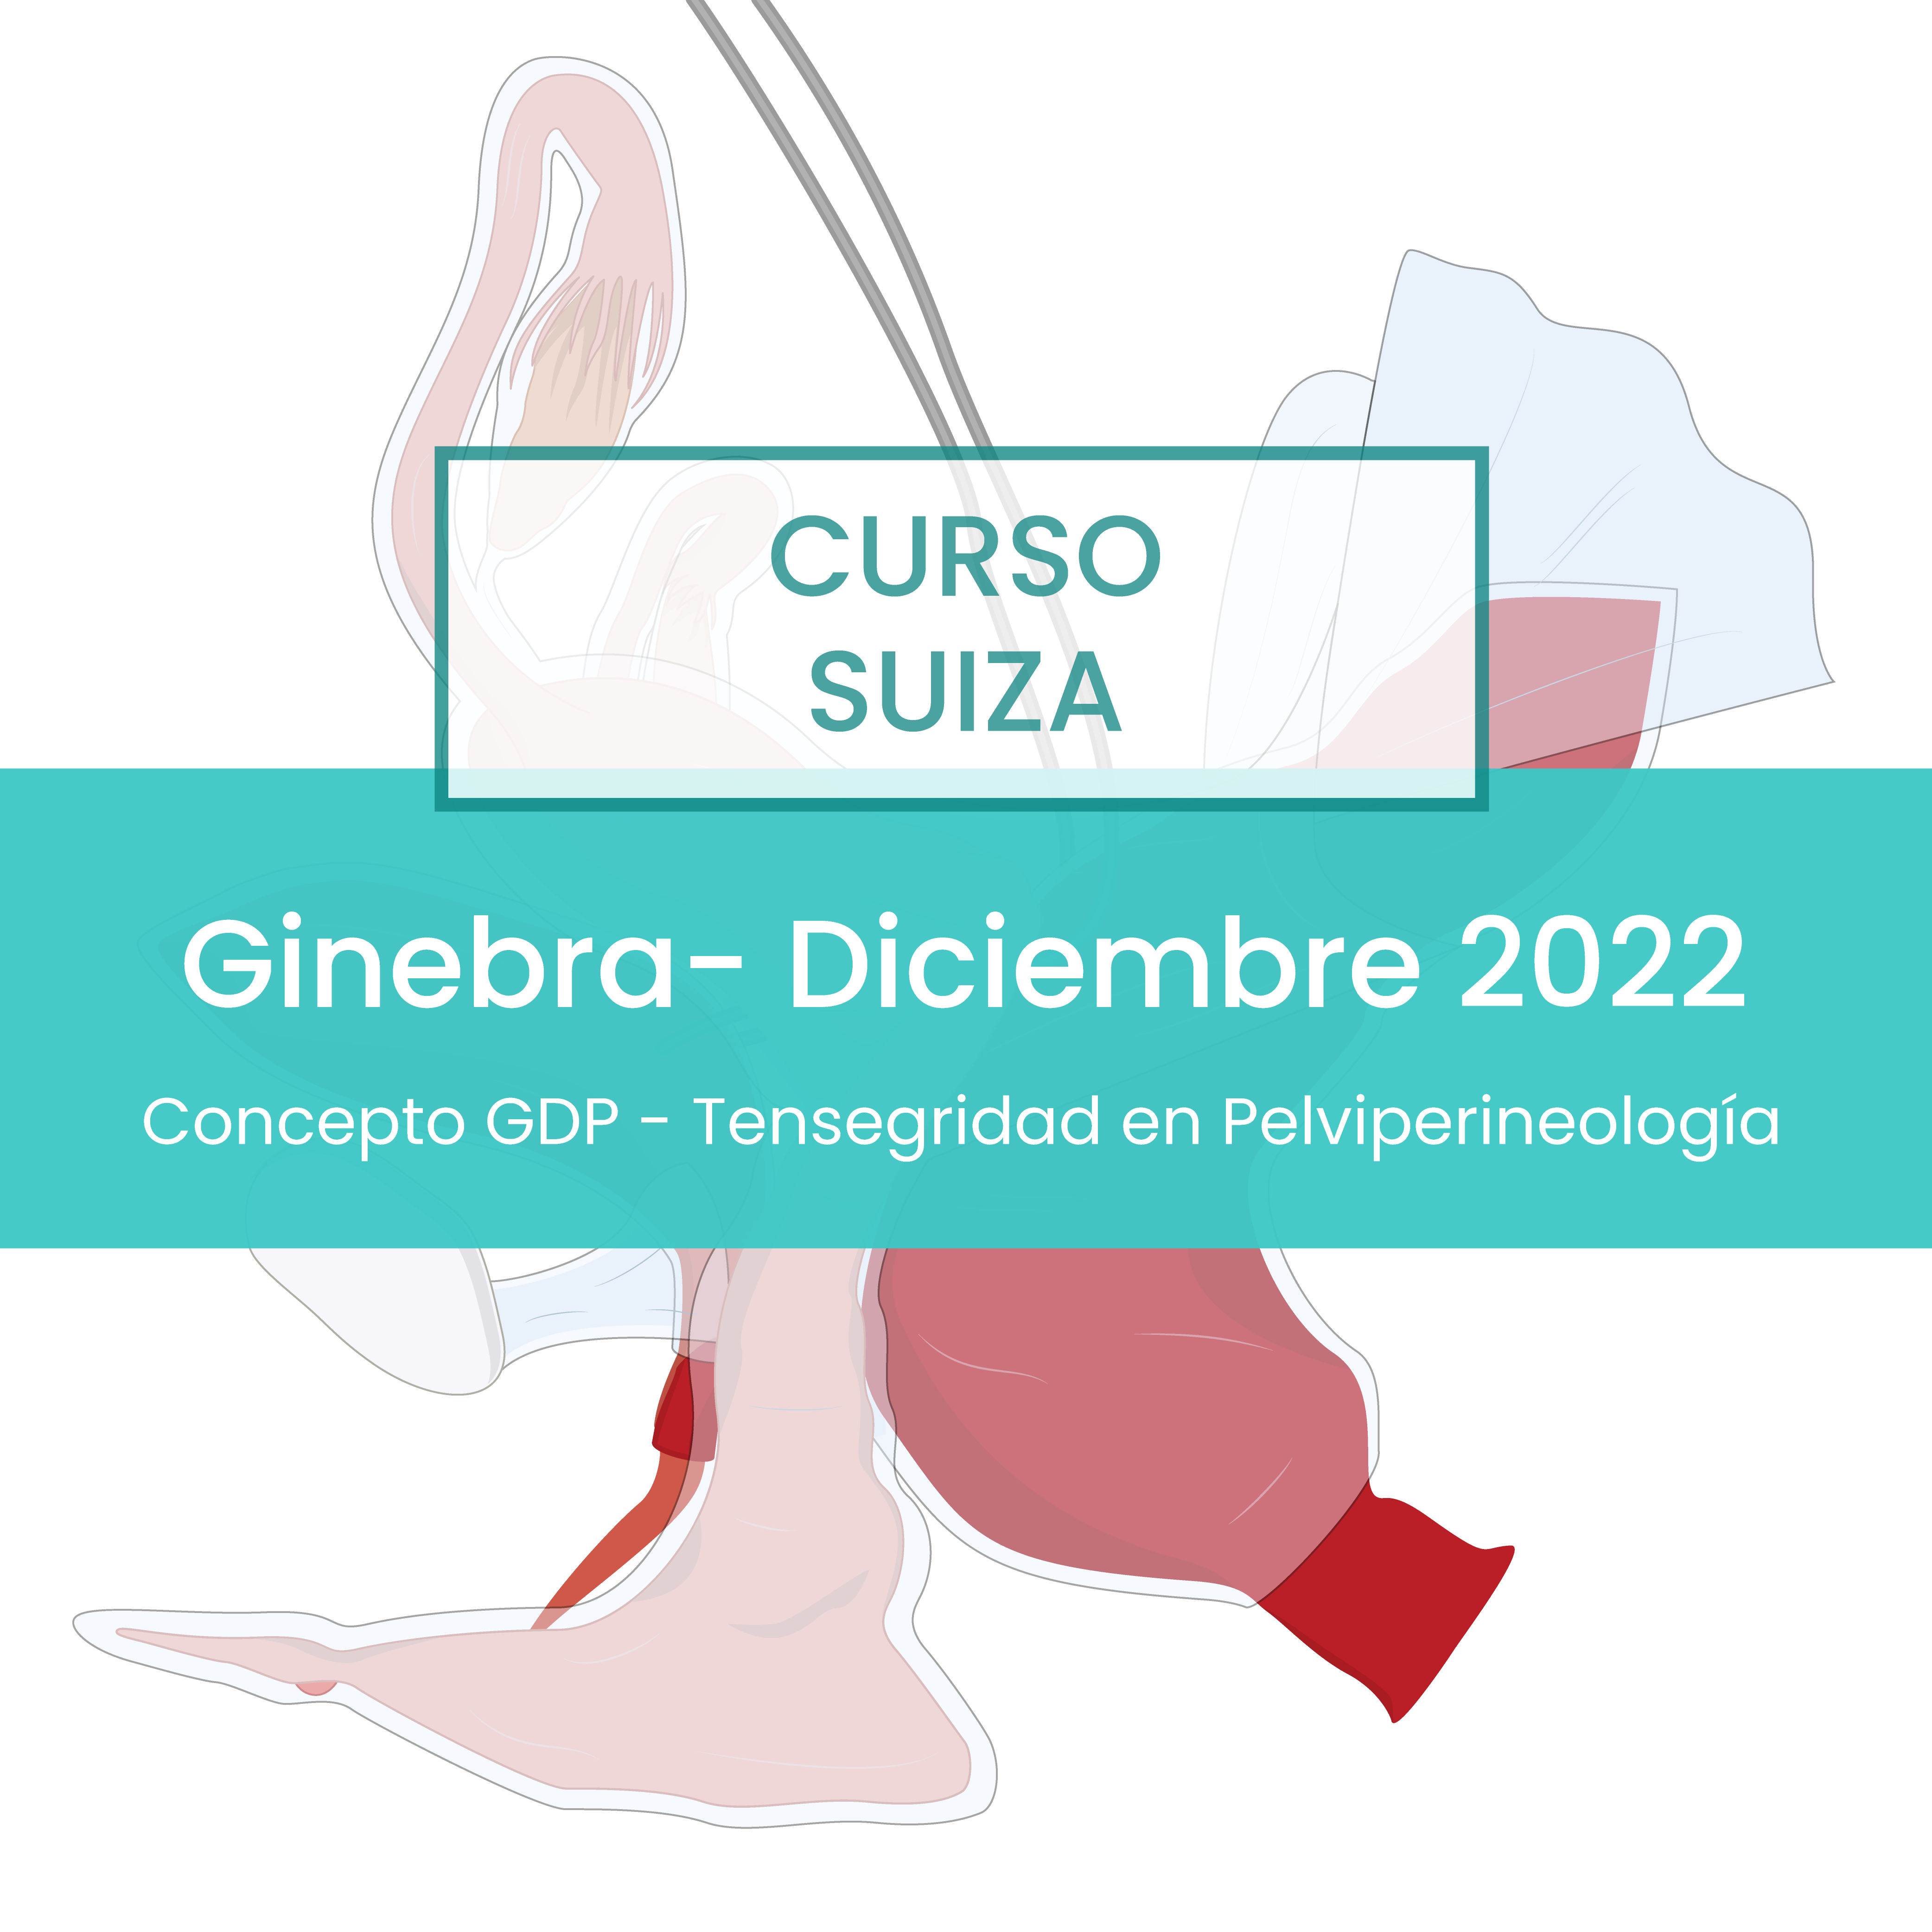 Ginebra - Diciembre 2022